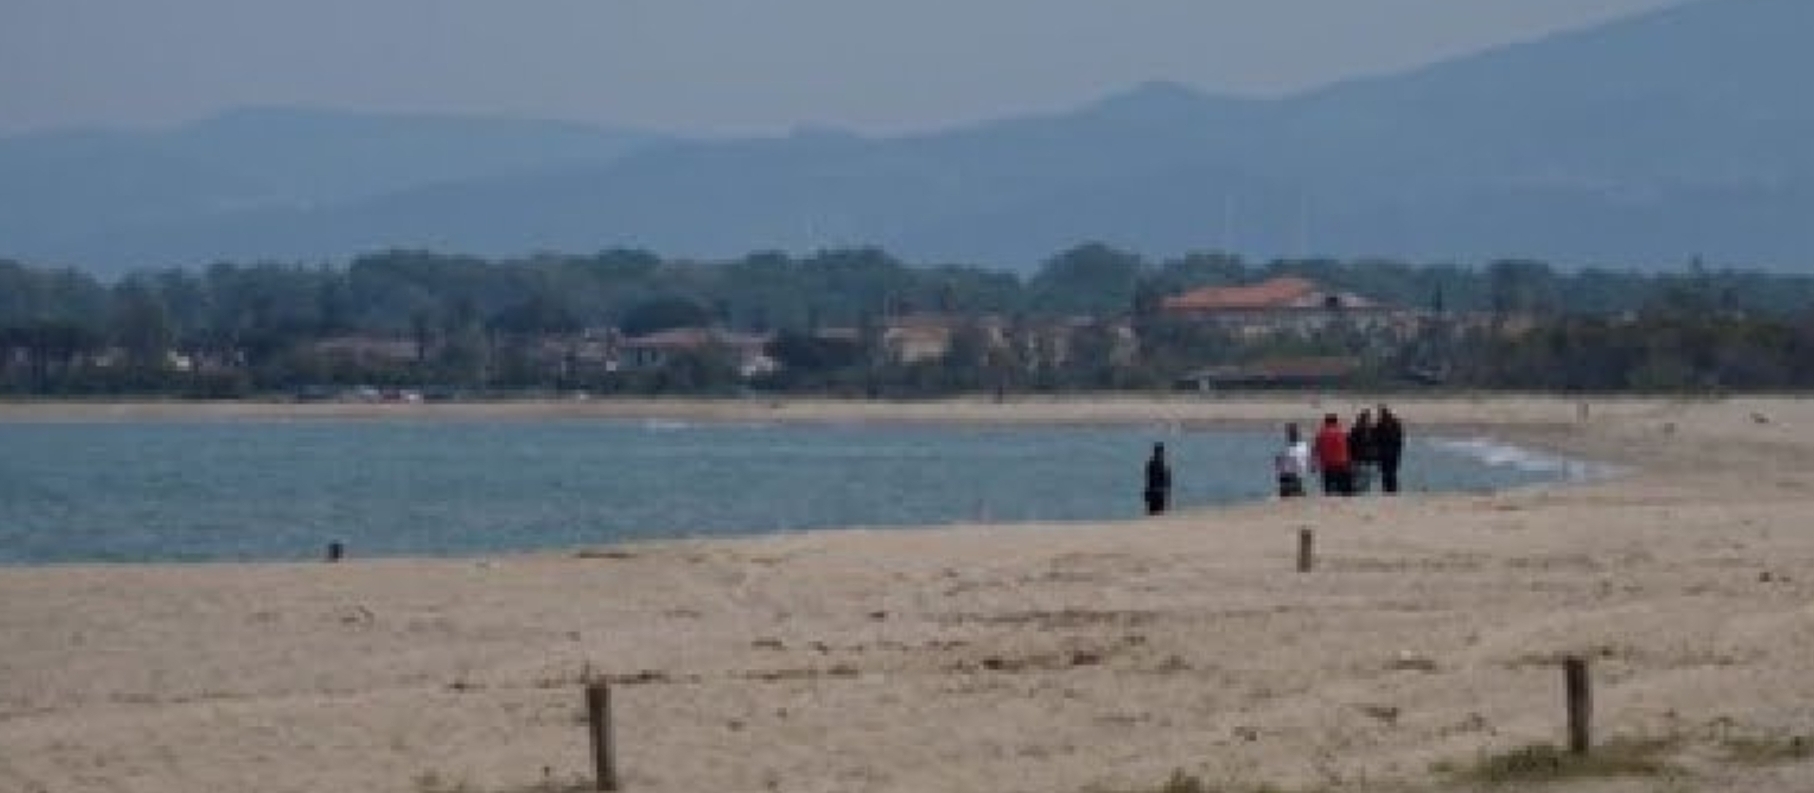 Marina di Sibari: Cadavere di un uomo sulla spiaggia